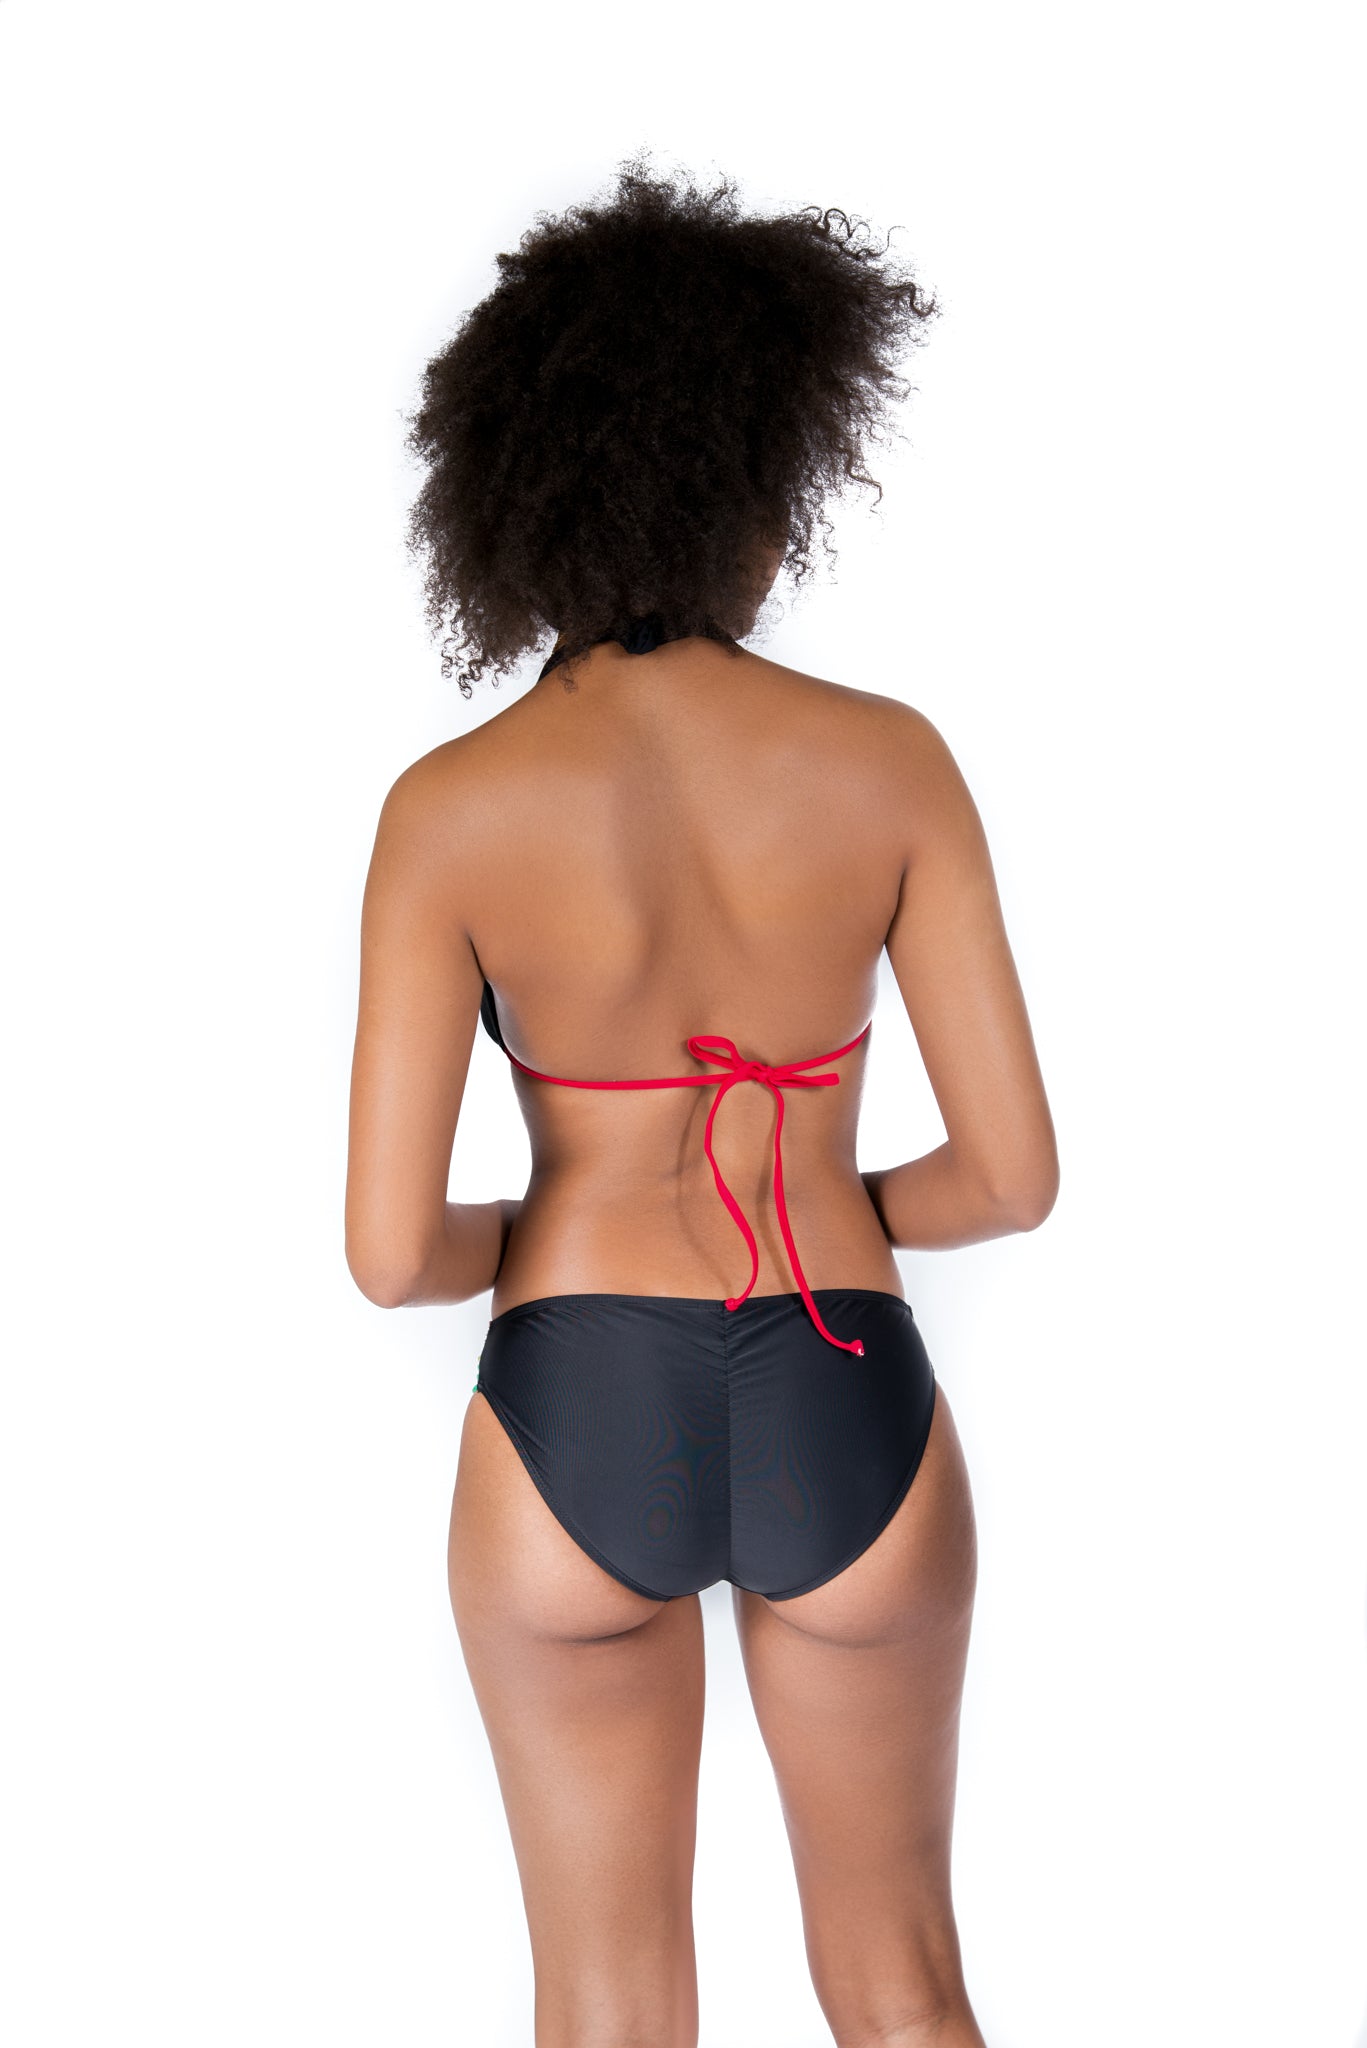 Pyrexia Bikini – Reggae Two-Piece Bikini